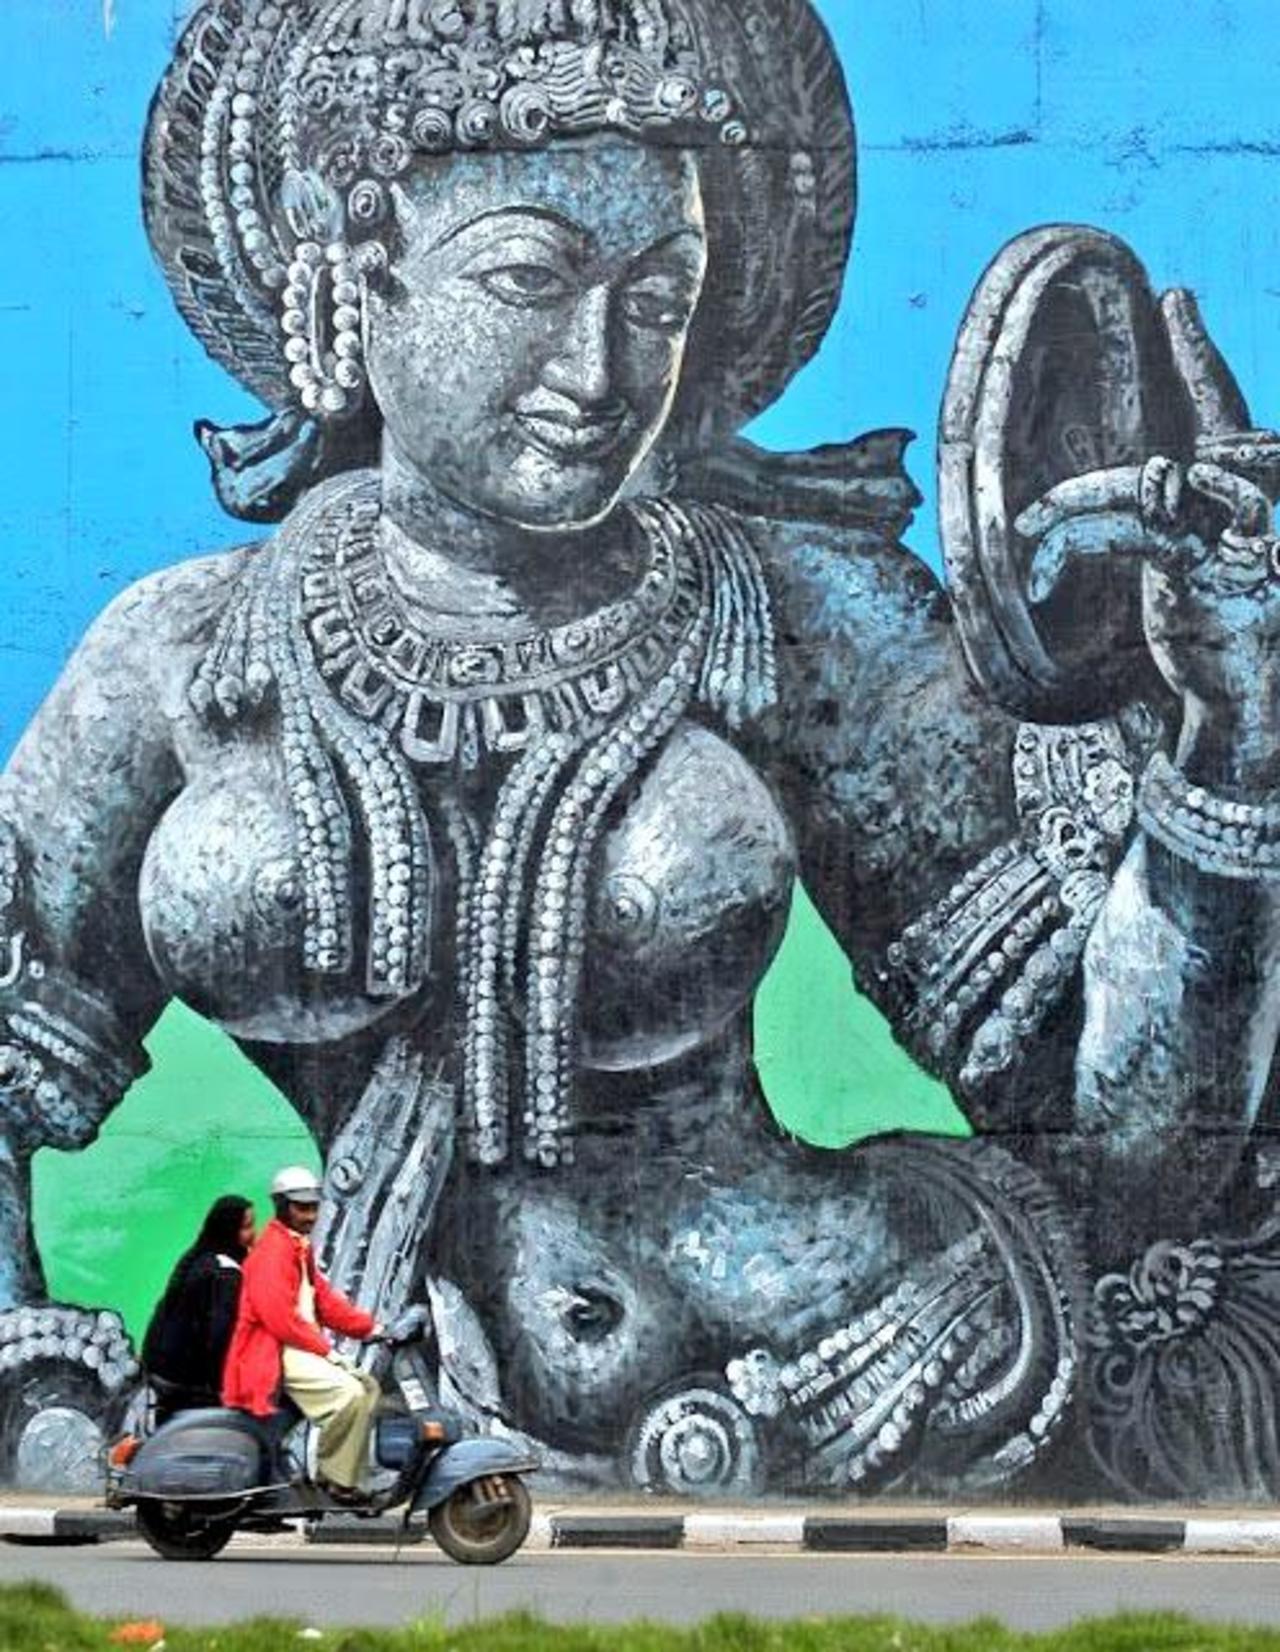 "@Pitchuskita: Street Art / India
#streetart #urbanart #art #graffiti http://t.co/AvrKaFgCio"